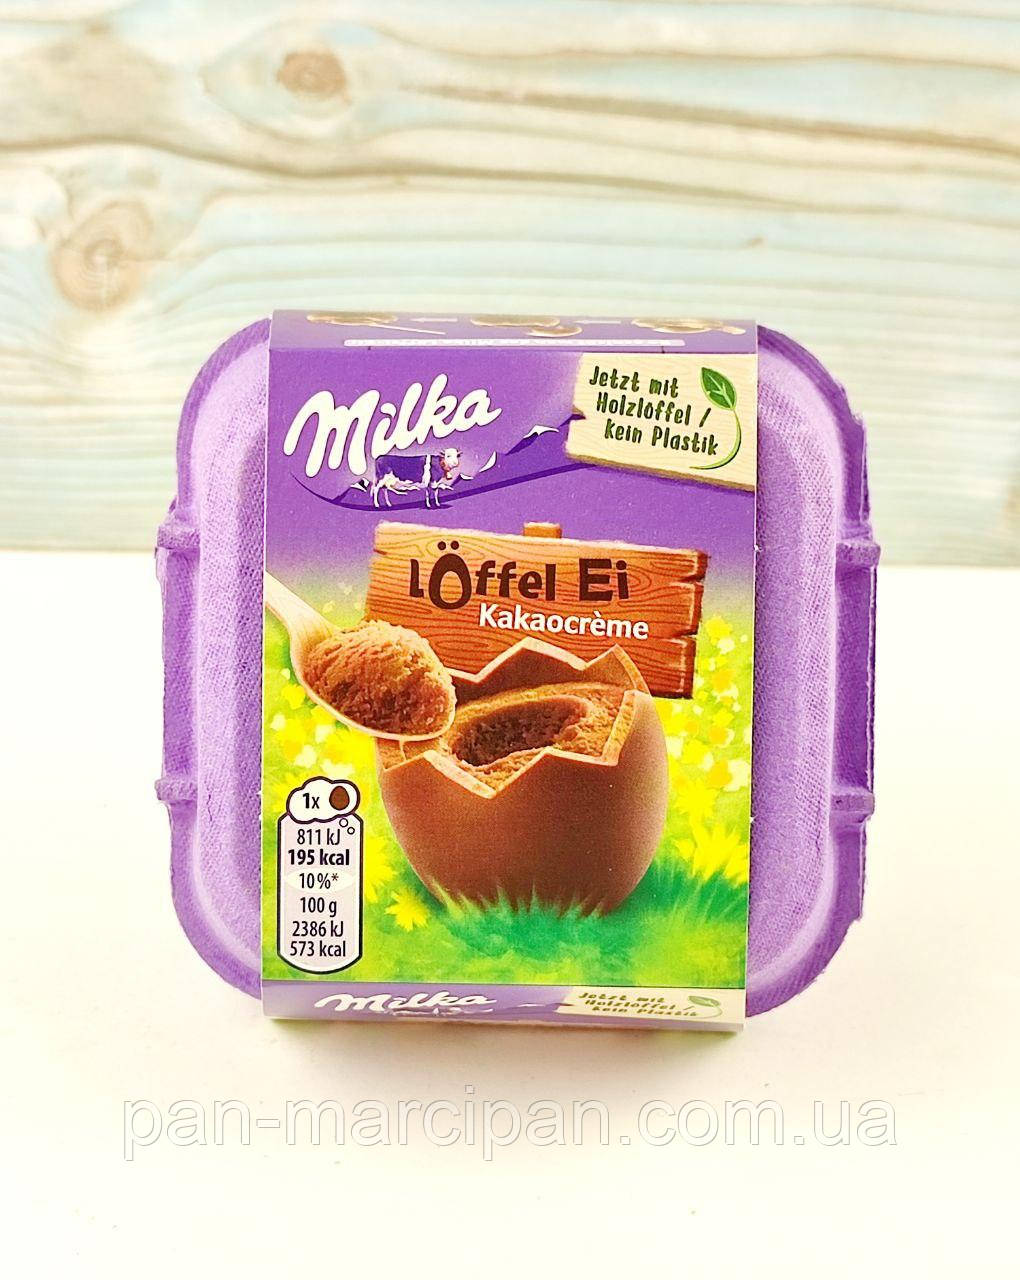 Шоколадні яйця з шоколадним кремом Milka Loffel Ei Kakaocreme 136г Німеччина